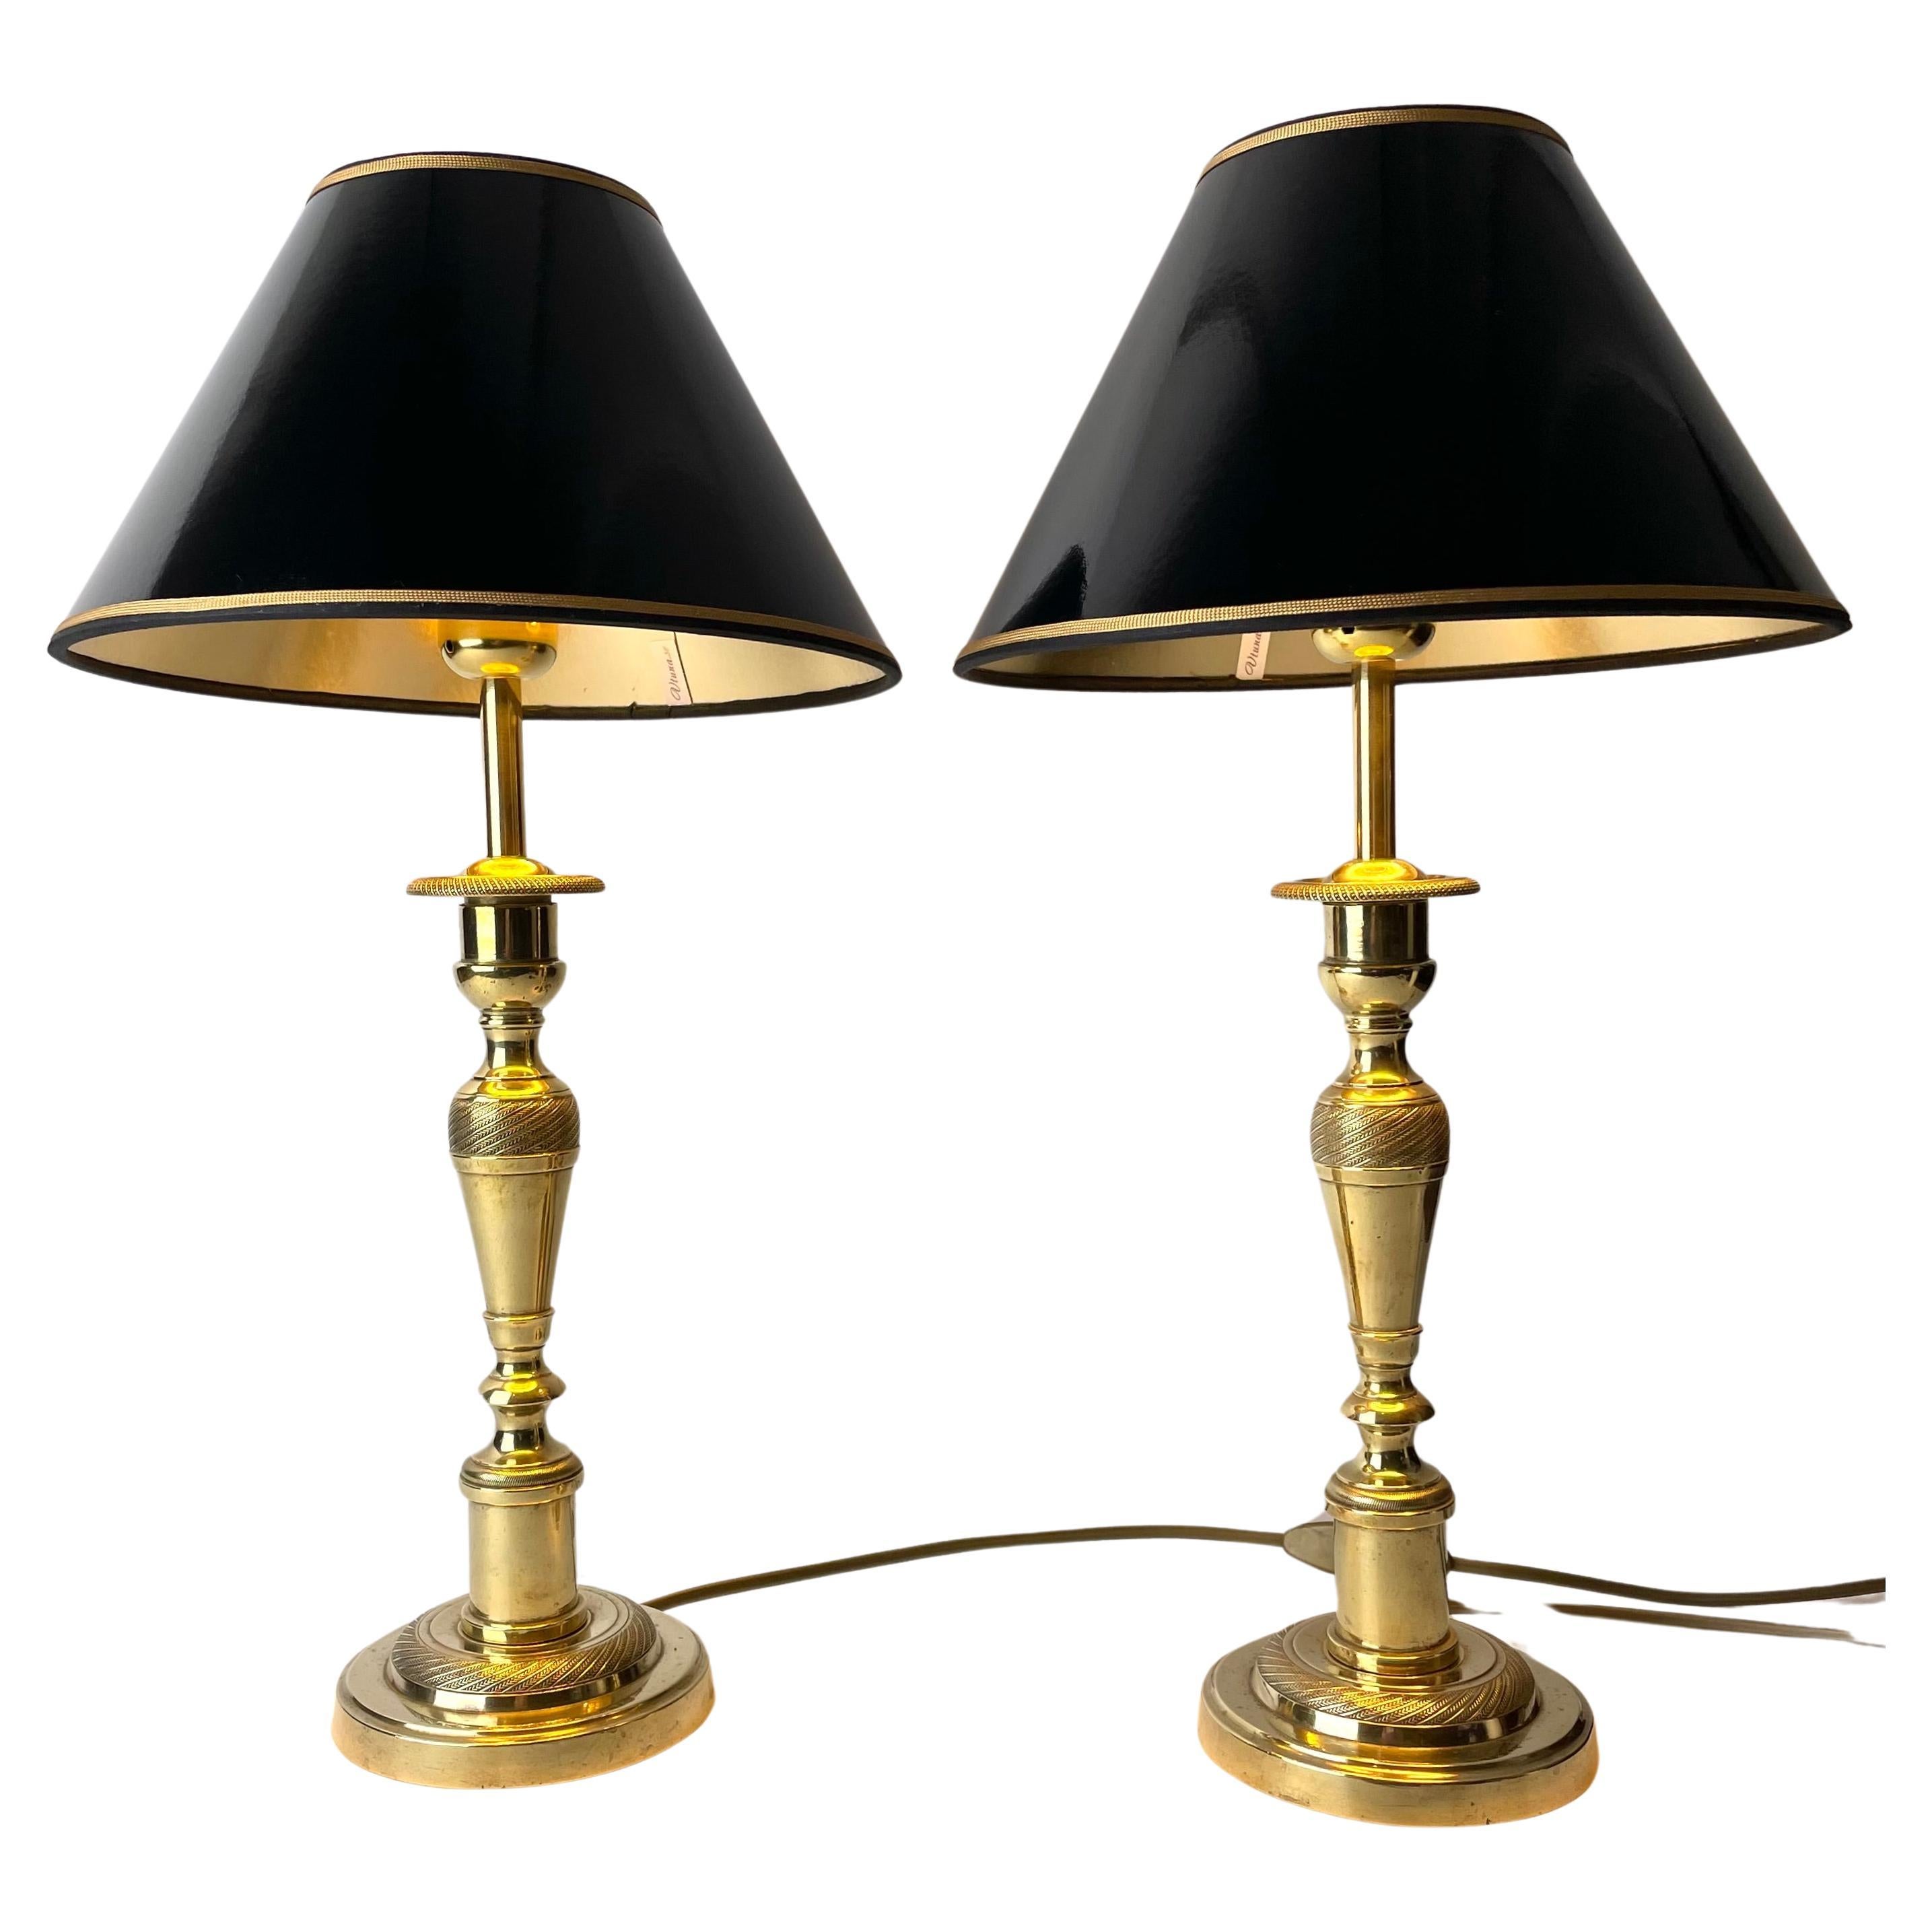 Schönes Paar Empire-Tischlampen, ursprünglich Kerzenständer aus den 1820er Jahren